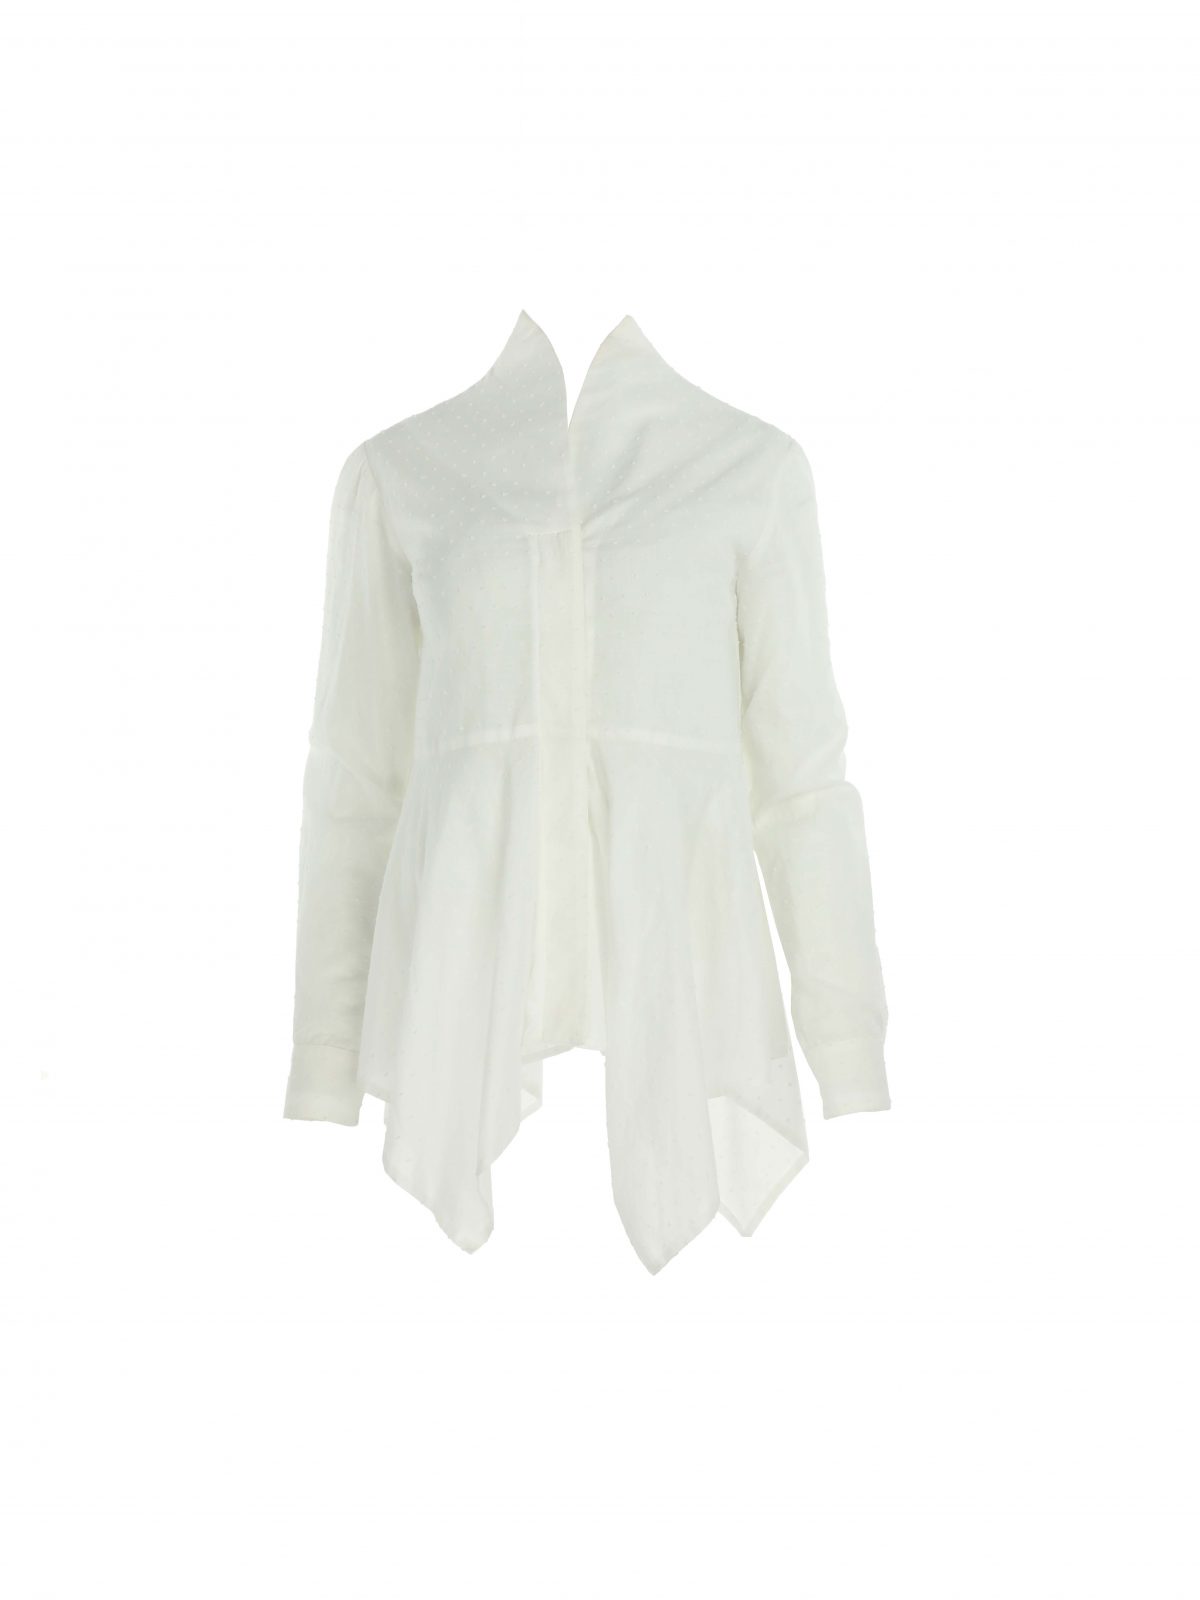 White cotton shirt with kimono collar and asymmetric cut | Larisa Dragna